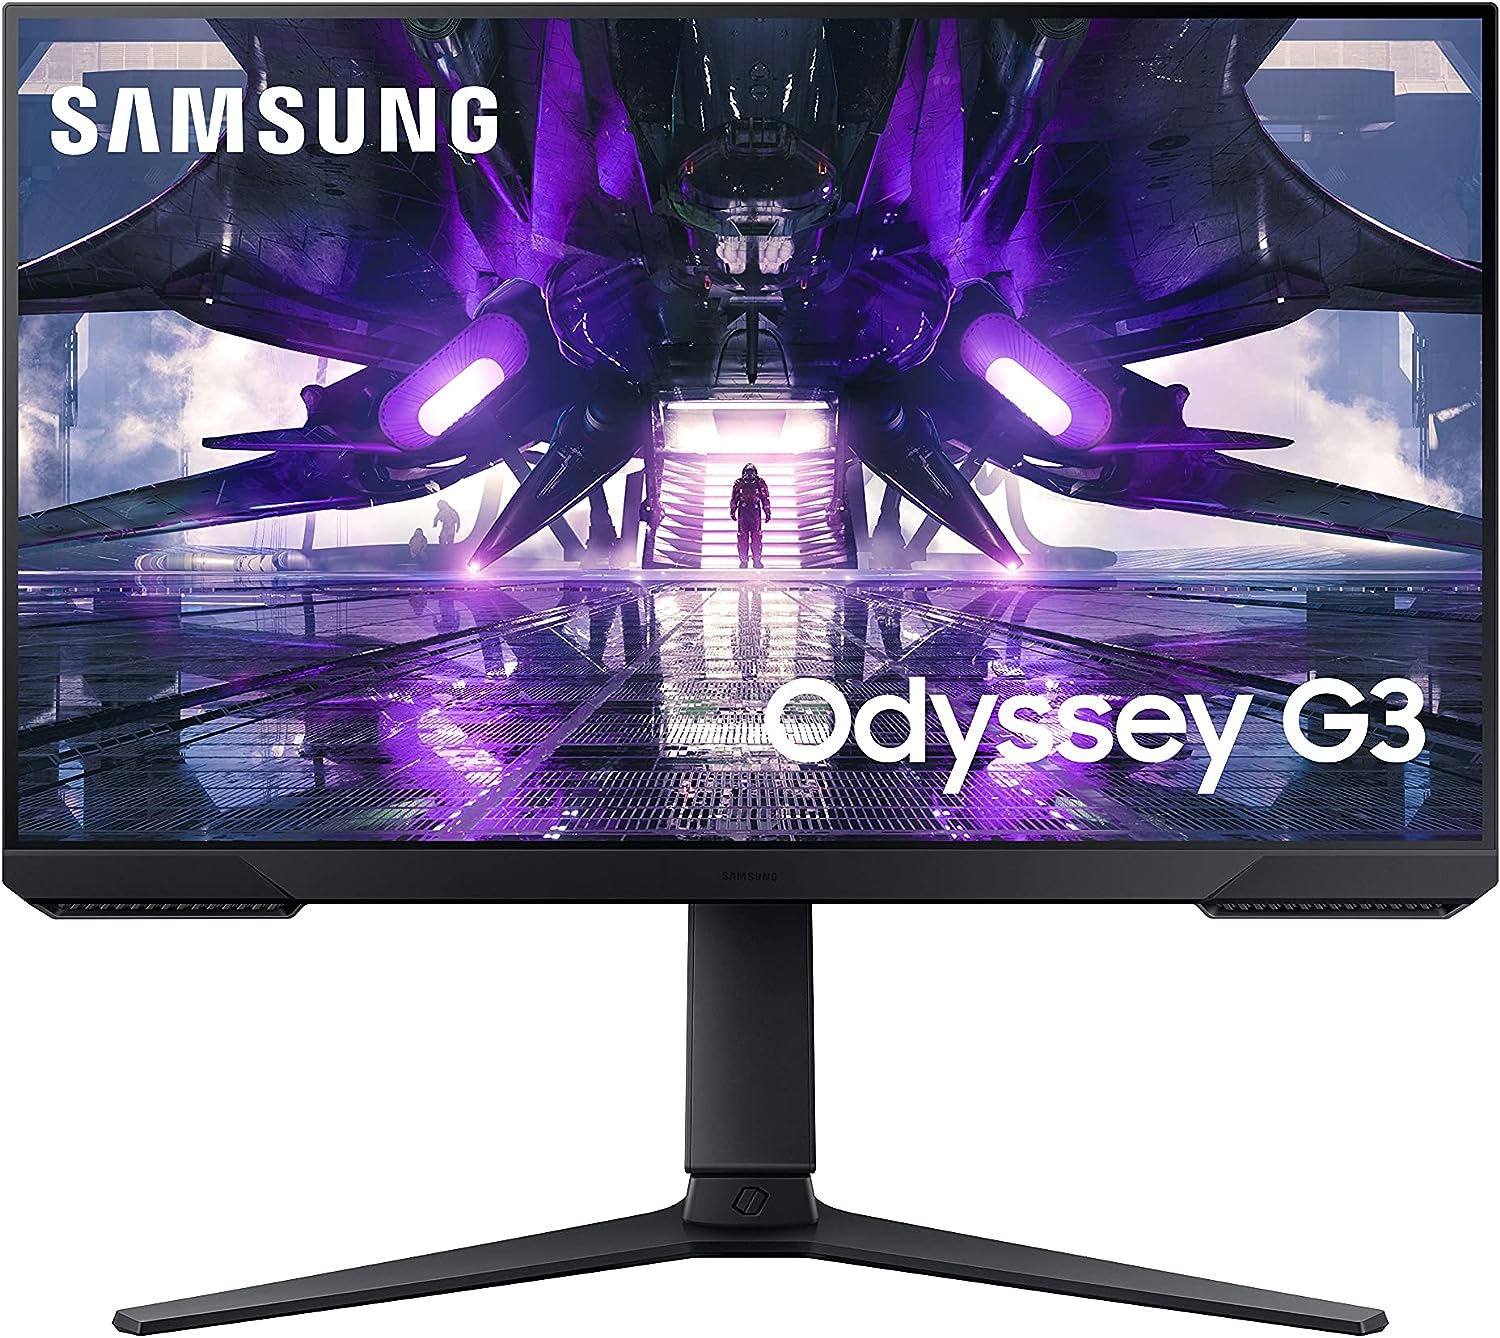 SAMSUNG Odyssey G3 FHD Gaming Monitor 144hz HDMI Vertical - Alaska - Anchorage ID1547278